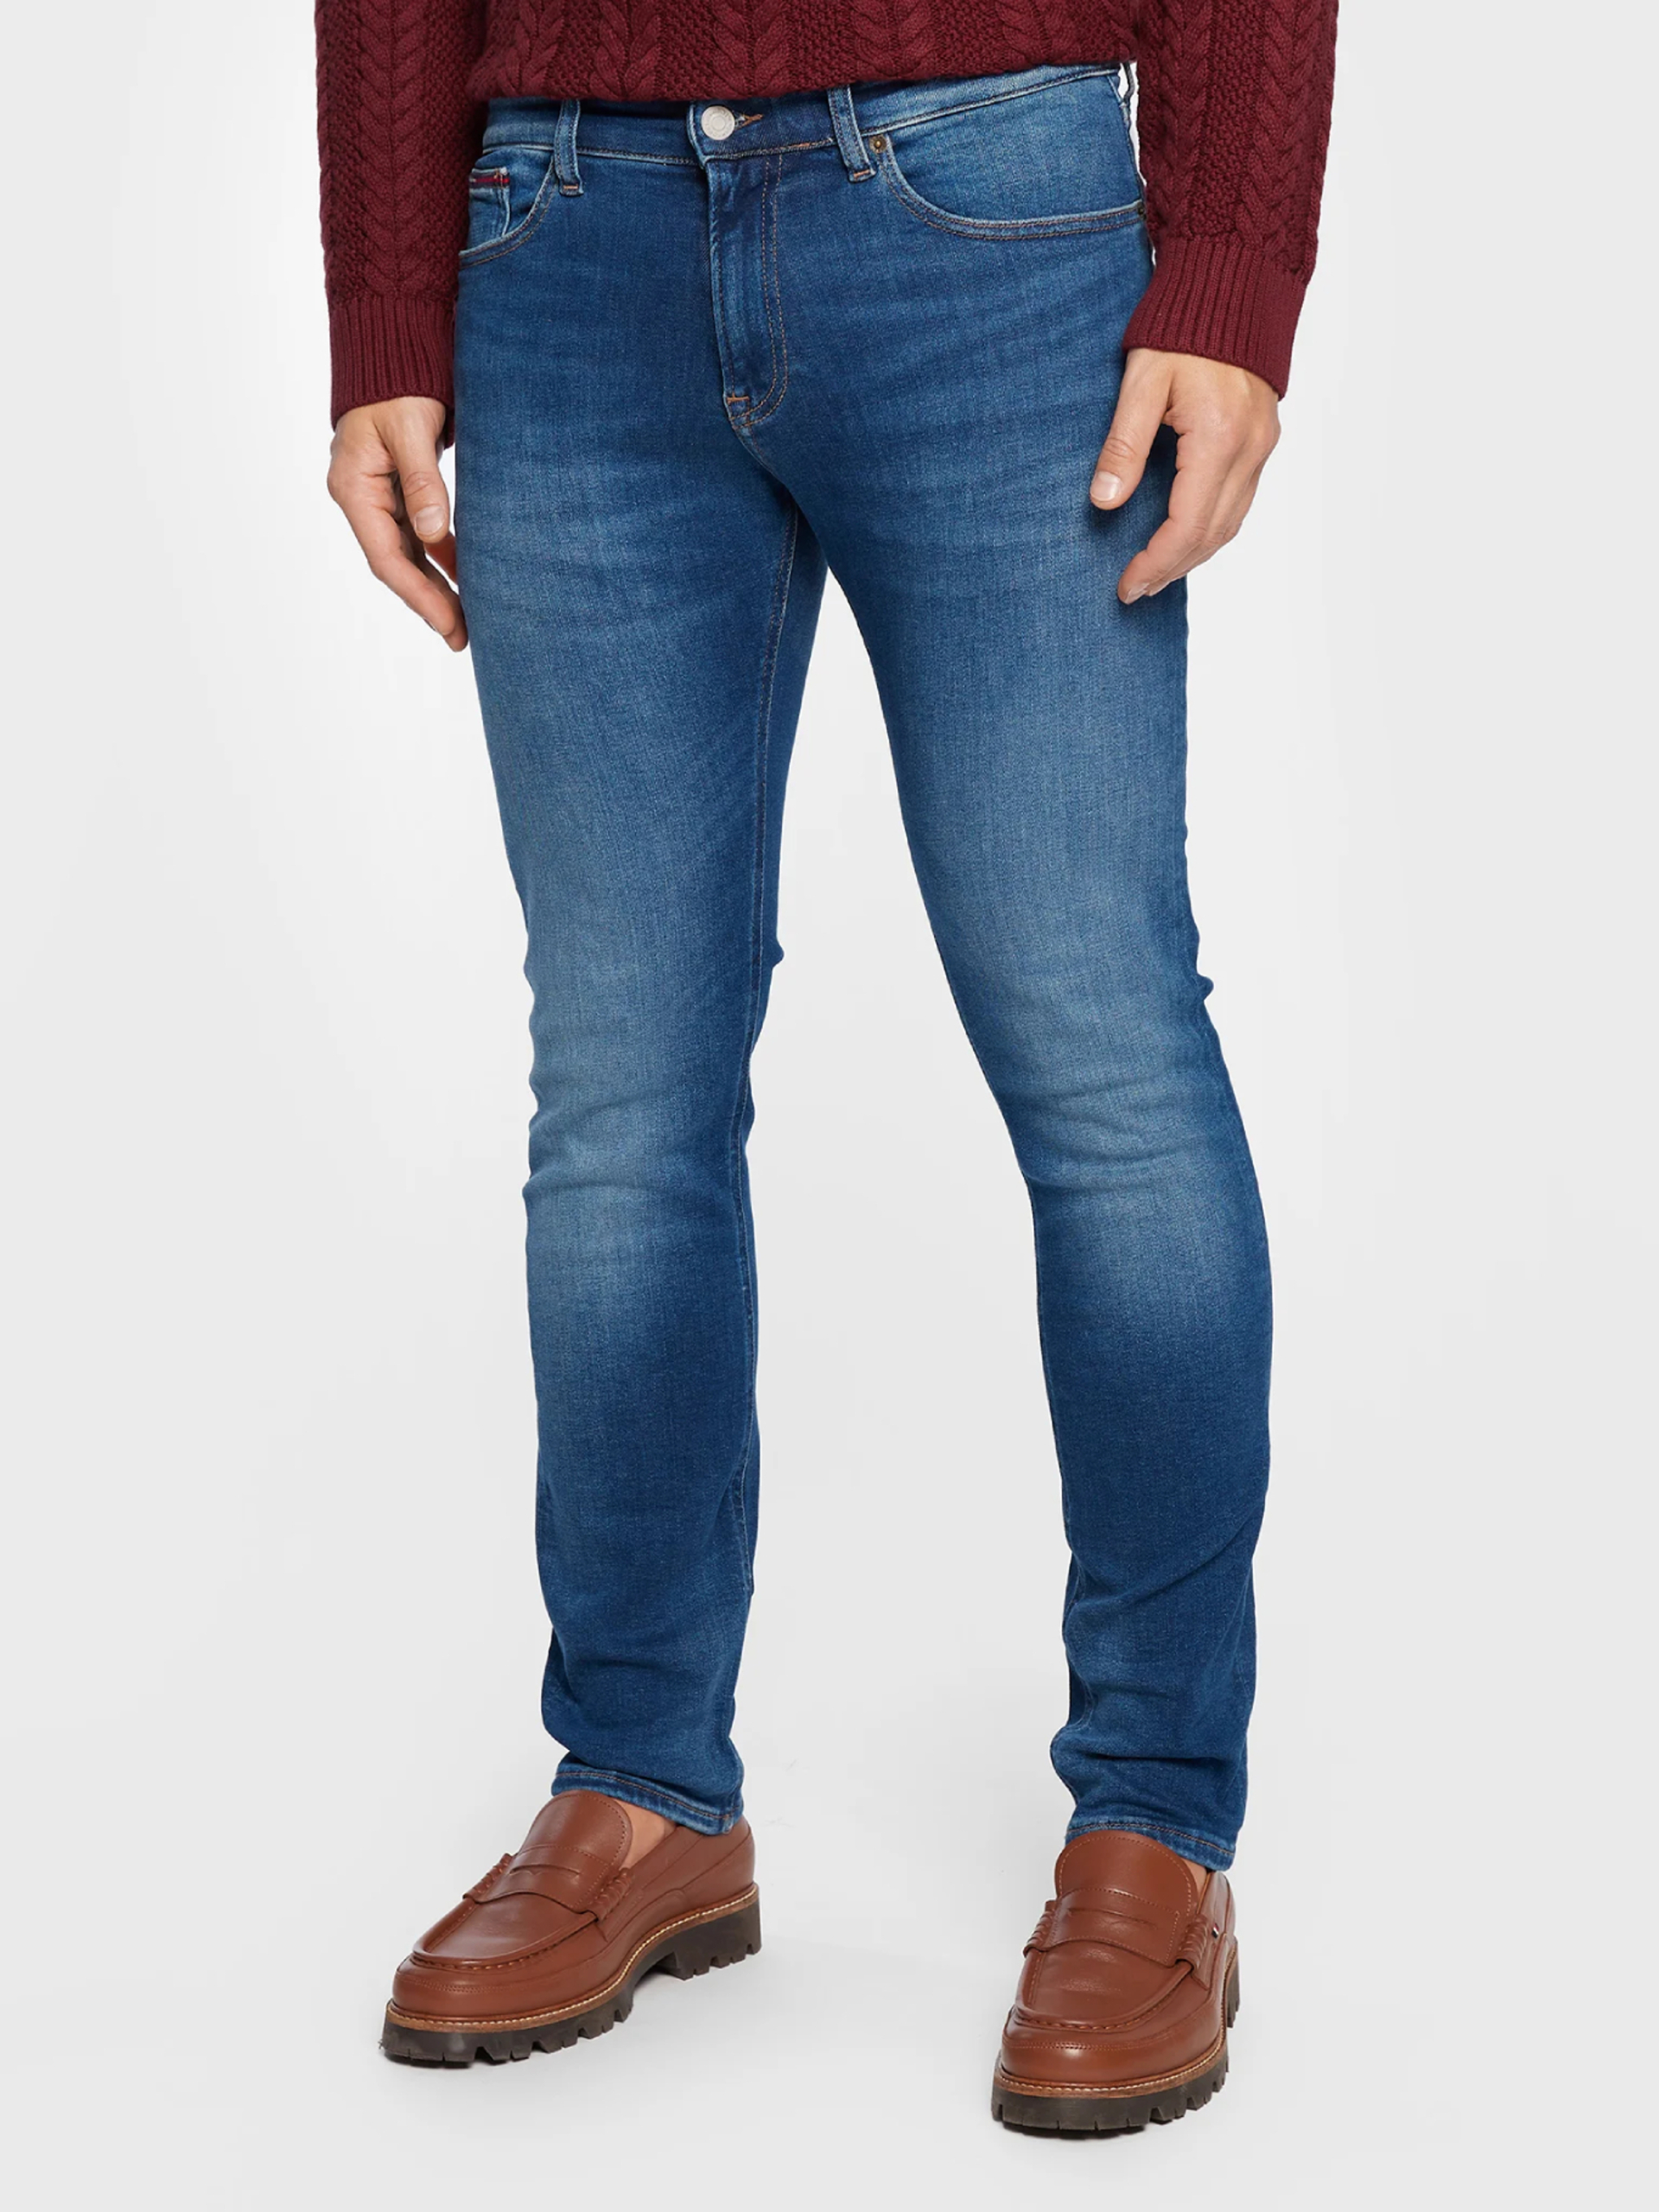 Tommy Jeans pánské modré džíny - 33/32 (1A5)